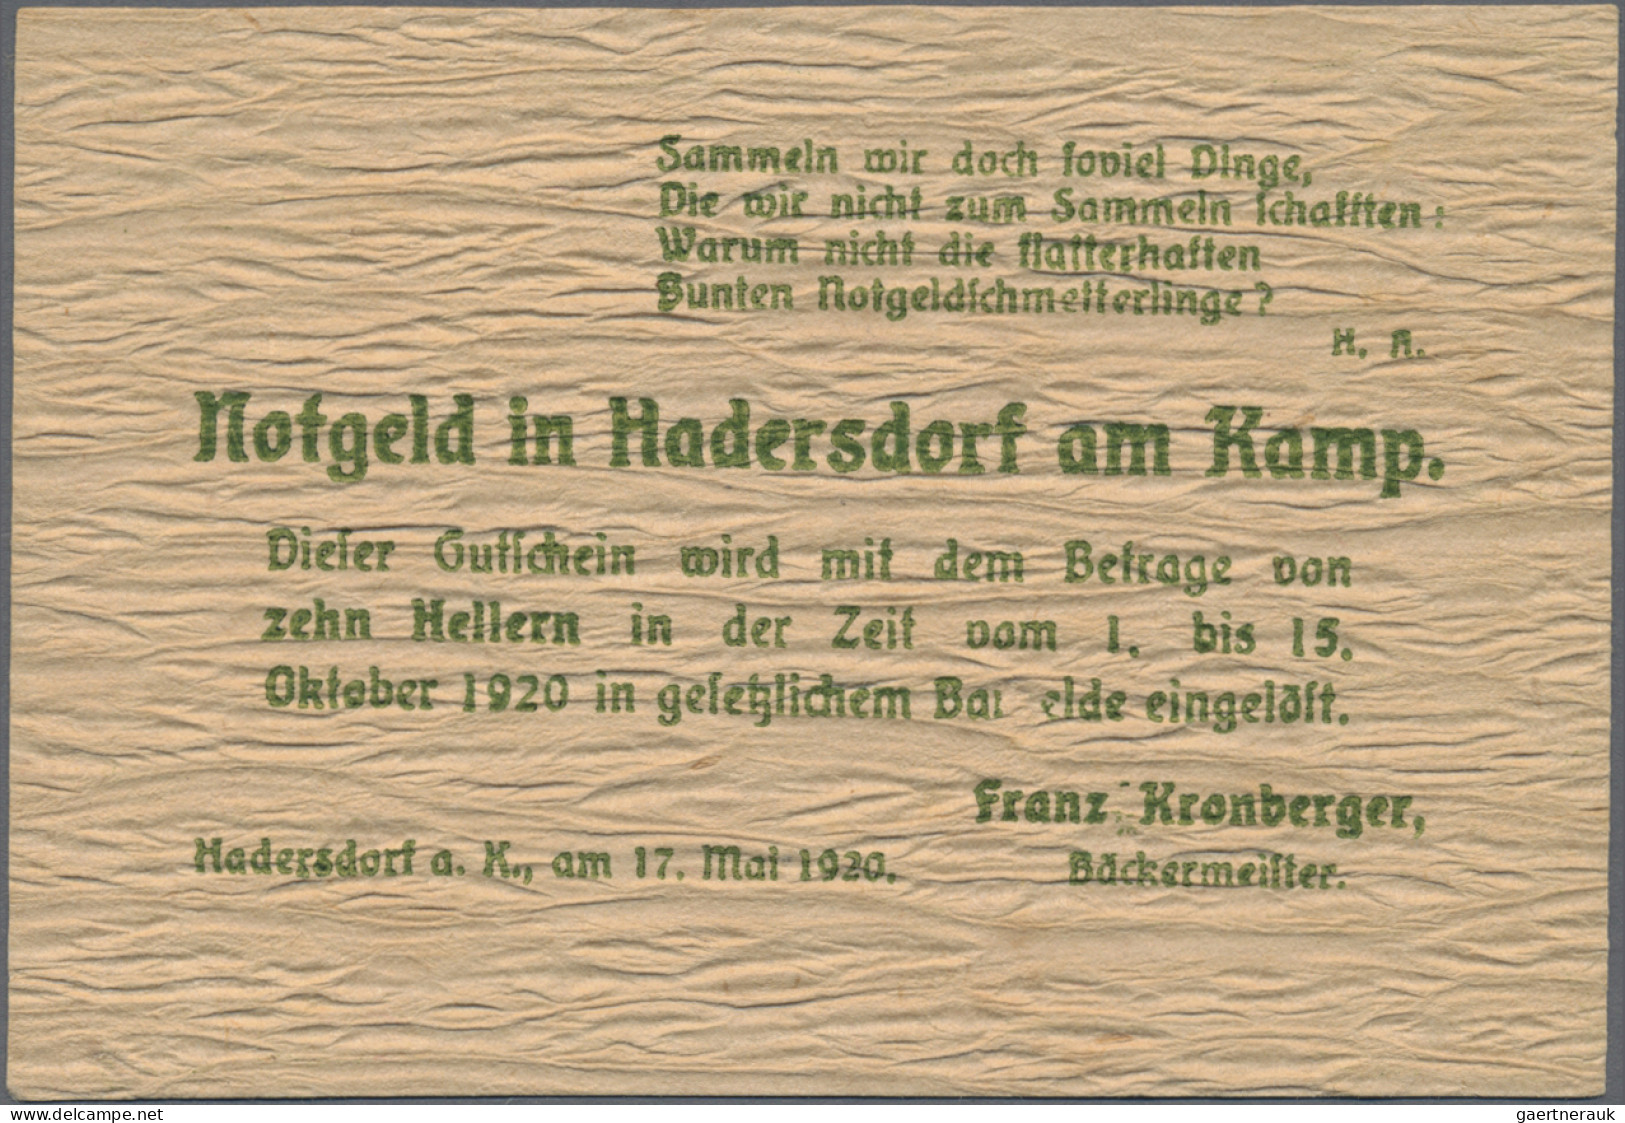 Austria: Hadersdorf Am Kamp, Franz Kronberger, 10, 20, 50 H., 17.5.1920, 10 H. W - Autriche